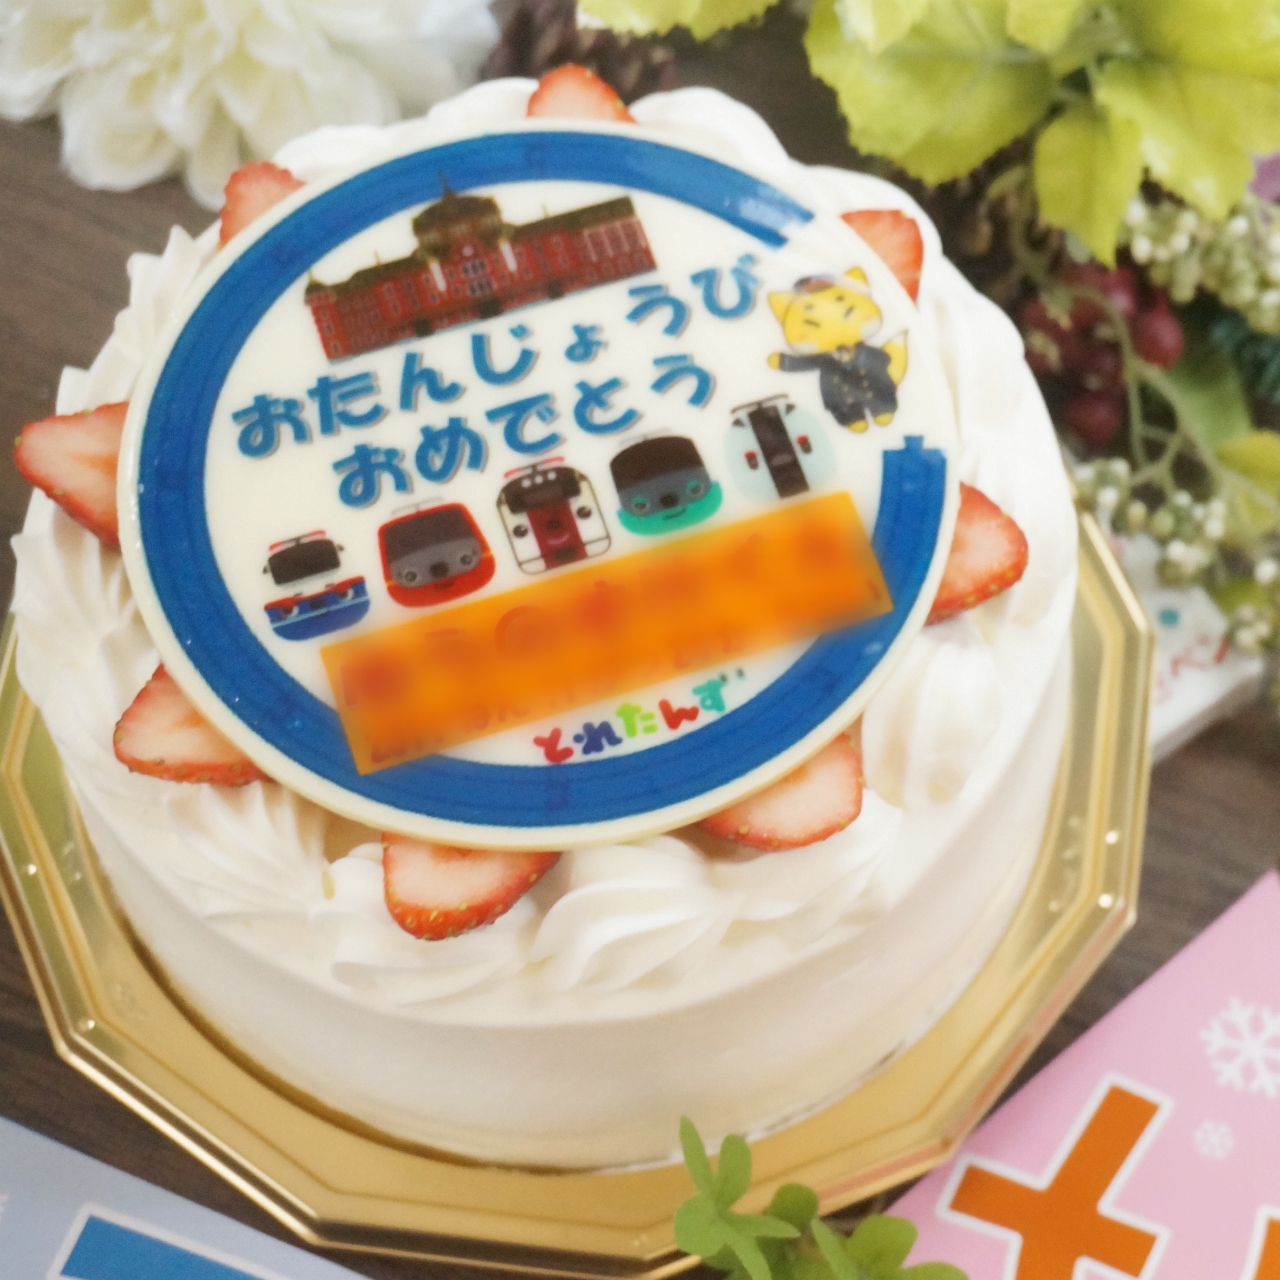 大田区 お誕生日や特別な日に 写真や好きなキャラクターをデコレーションケーキにオーダーできる美味しい洋菓子屋さんが久が原にあります 号外net 大田区